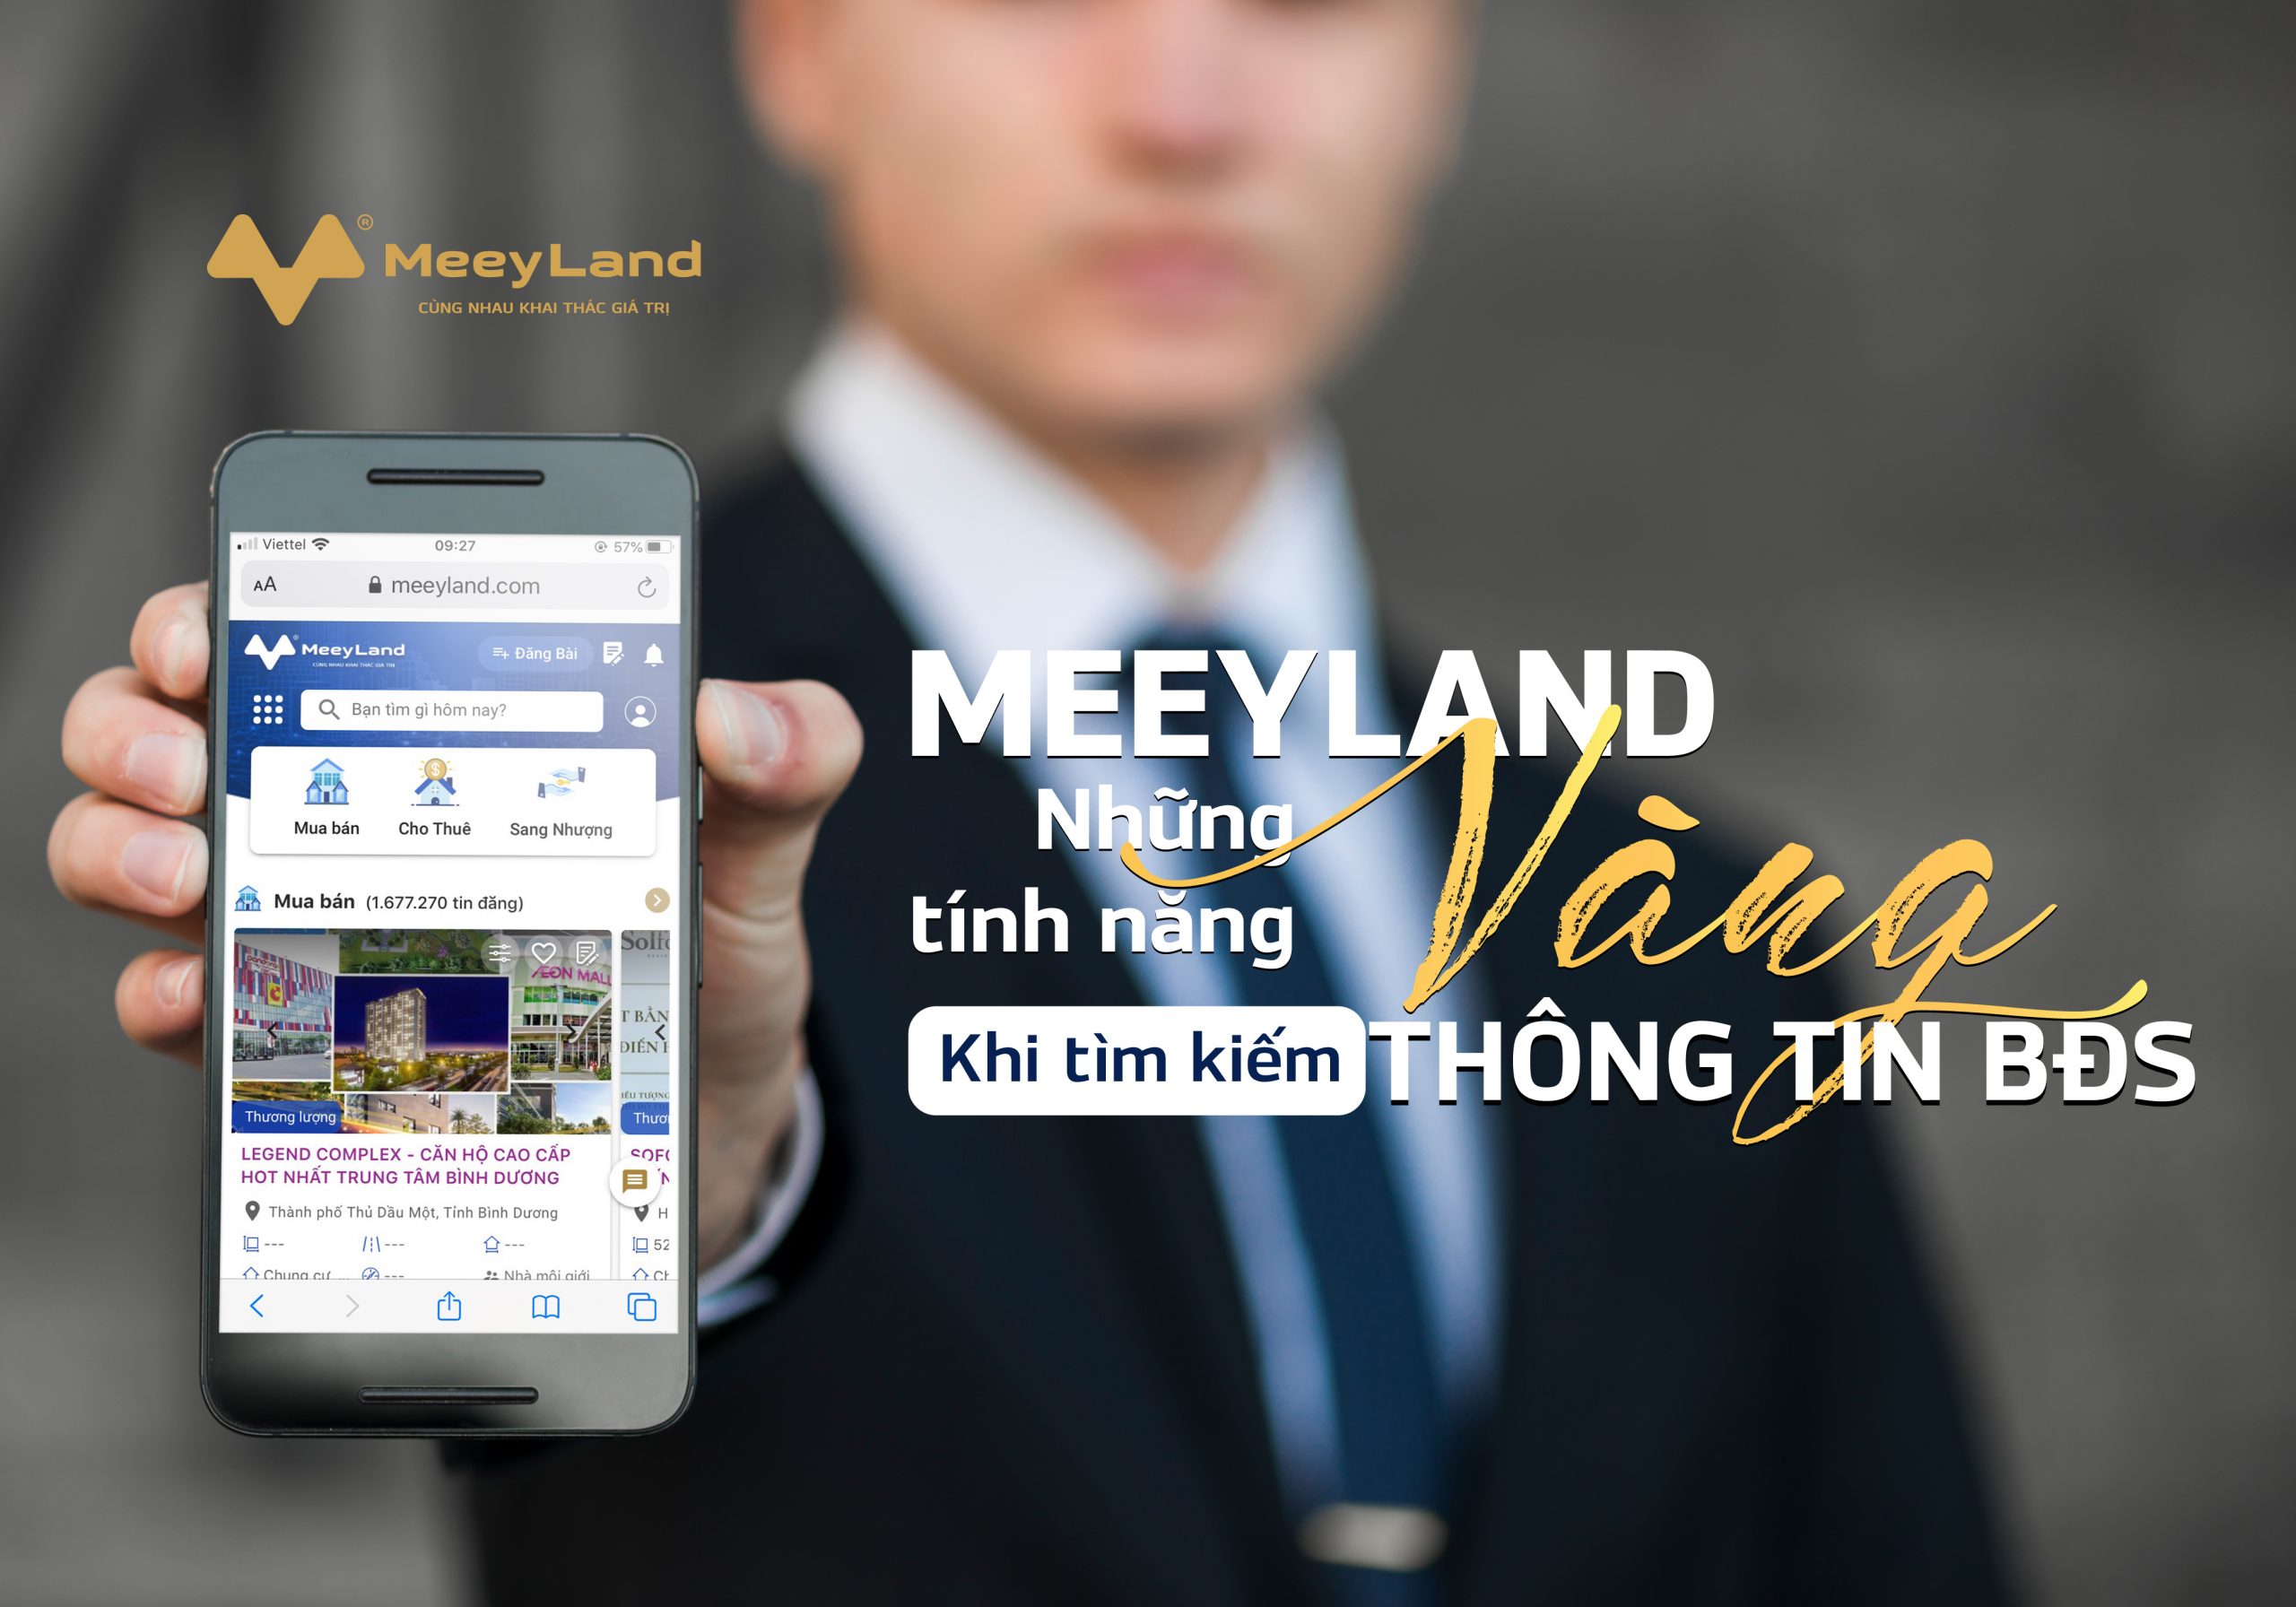  Meeyland.com và MeeyLand App - Sự lựa chọn đầu tiên khi tìm kiếm thông tin bất động sản